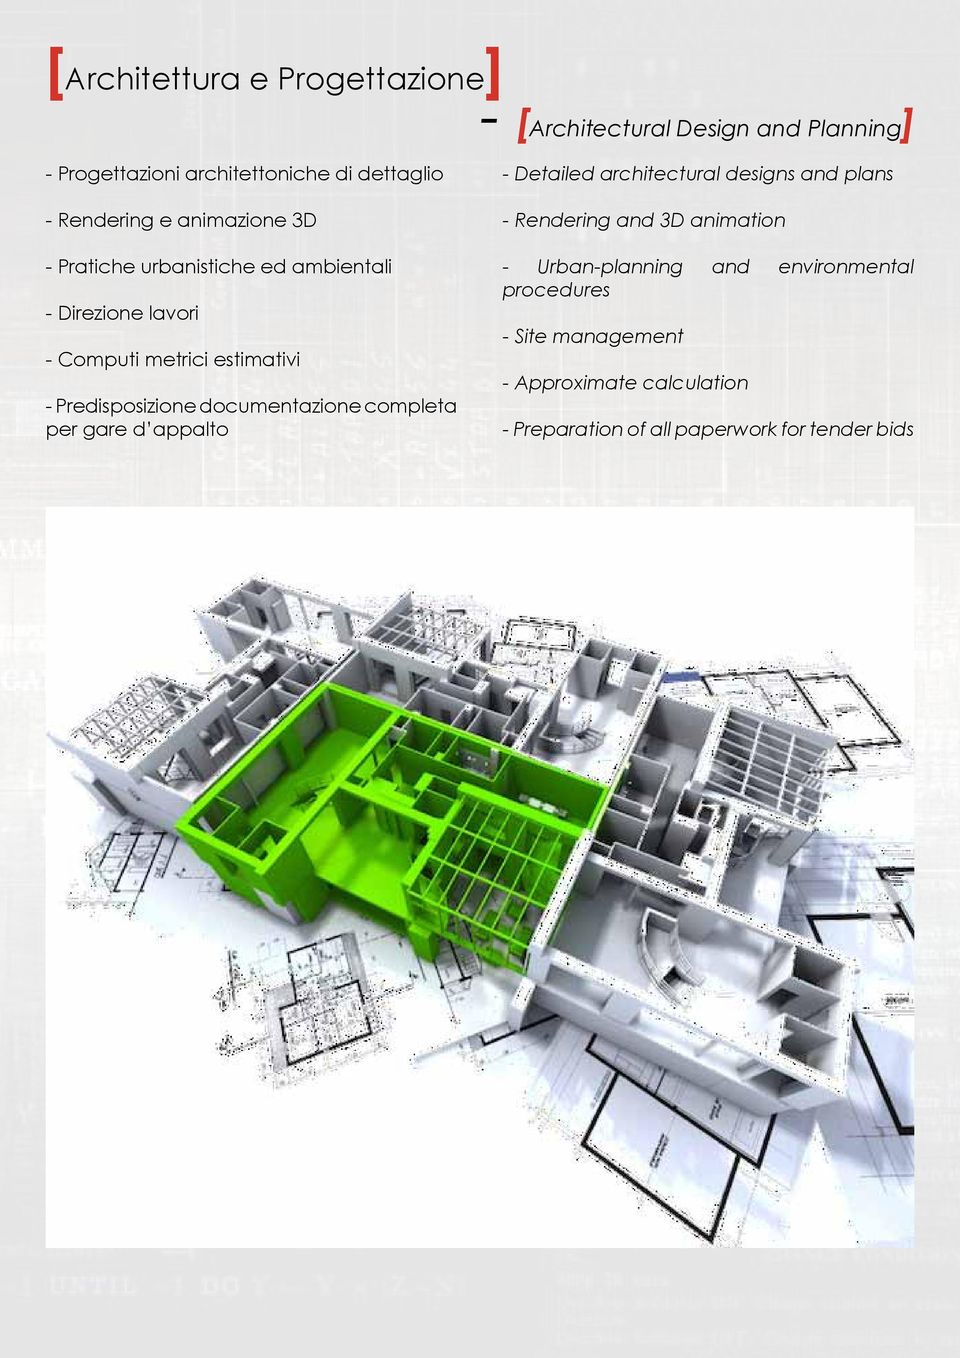 Predisposizione documentazione completa per gare d appalto - Detailed architectural designs and plans - Rendering and 3D